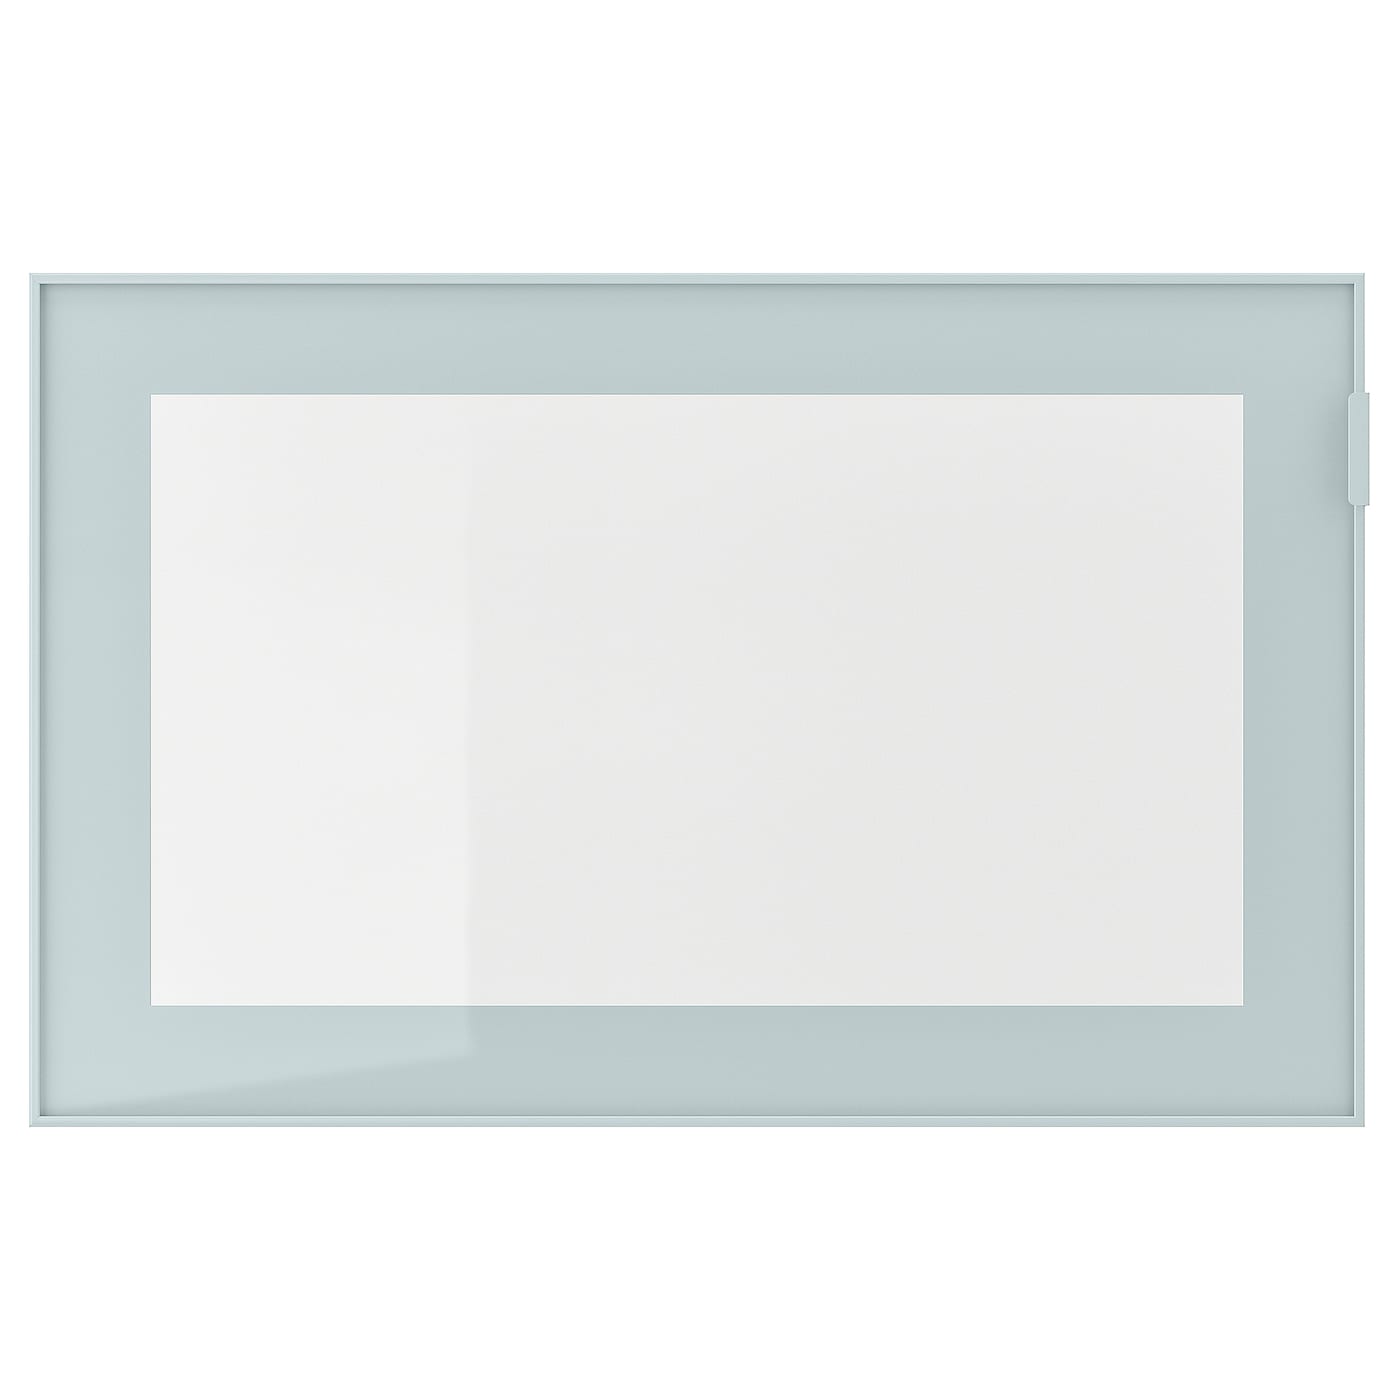 Стеклянная дверца - GLASSVIK IKEA/ ГЛАССВИК ИКЕА,  60x38 см,светло-голубой